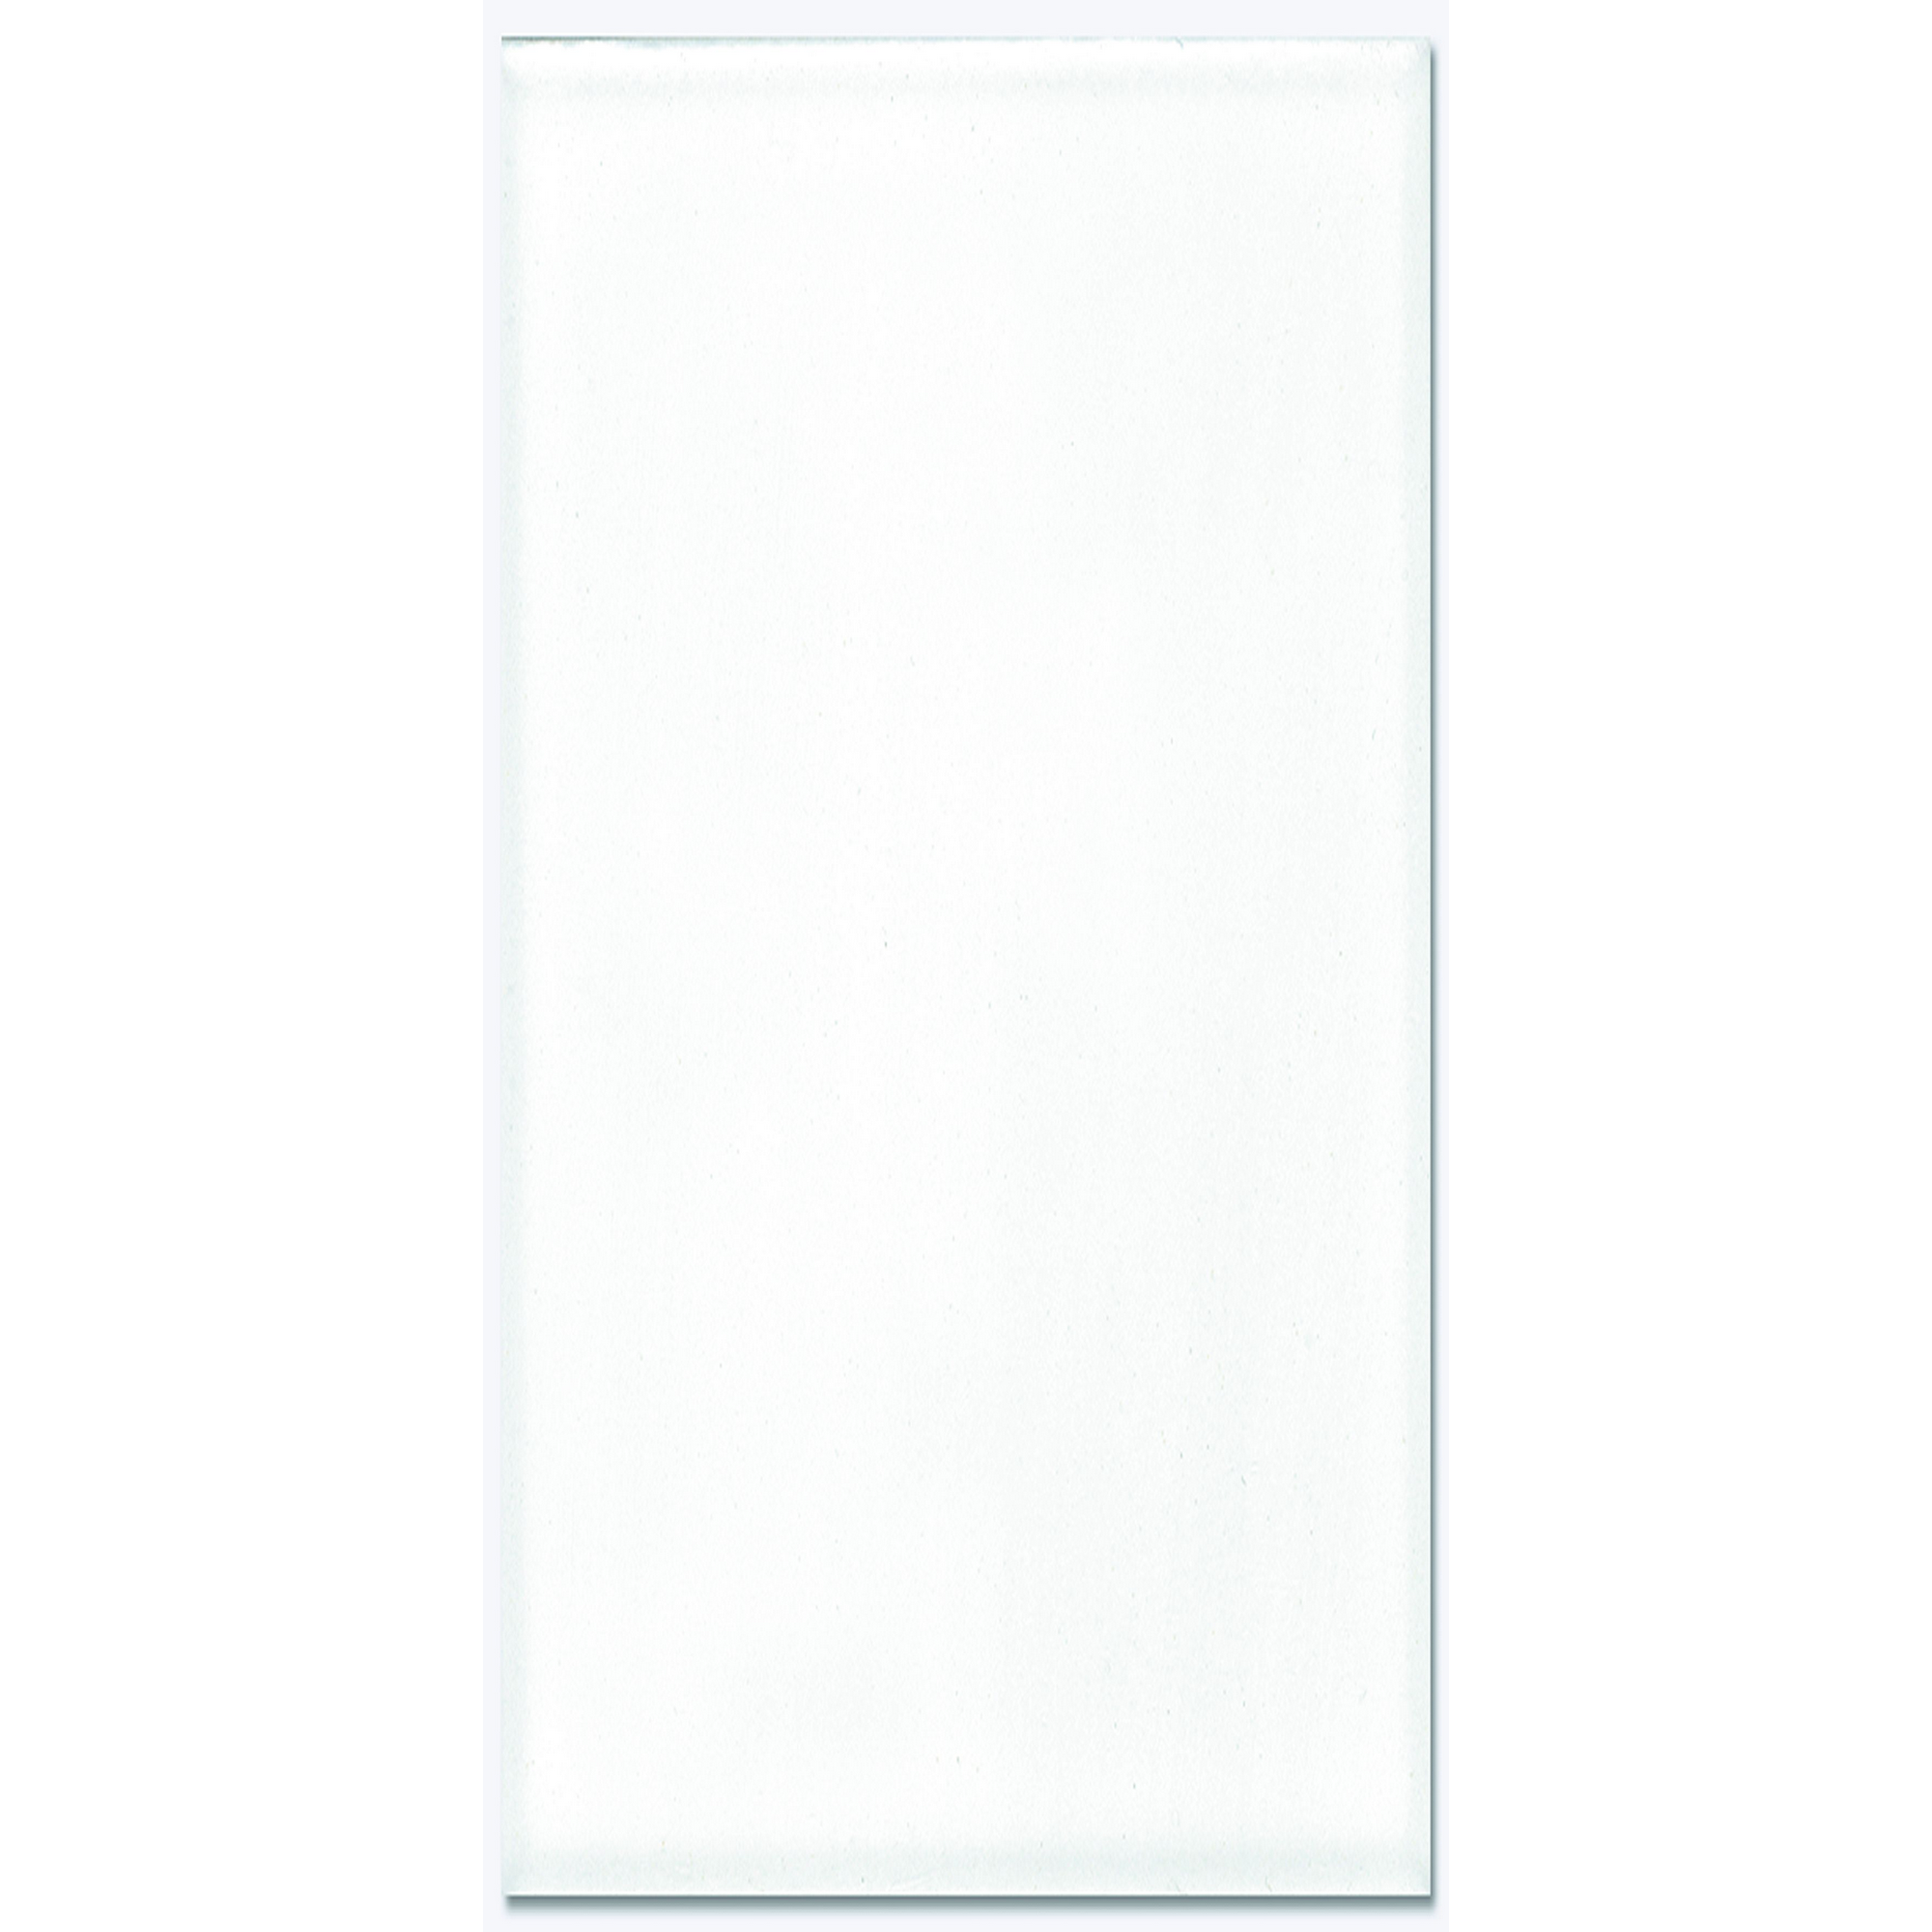 Wandfliese 'Bianca' Feinsteinzeug weiß 29,8 x 59,8 cm + product picture